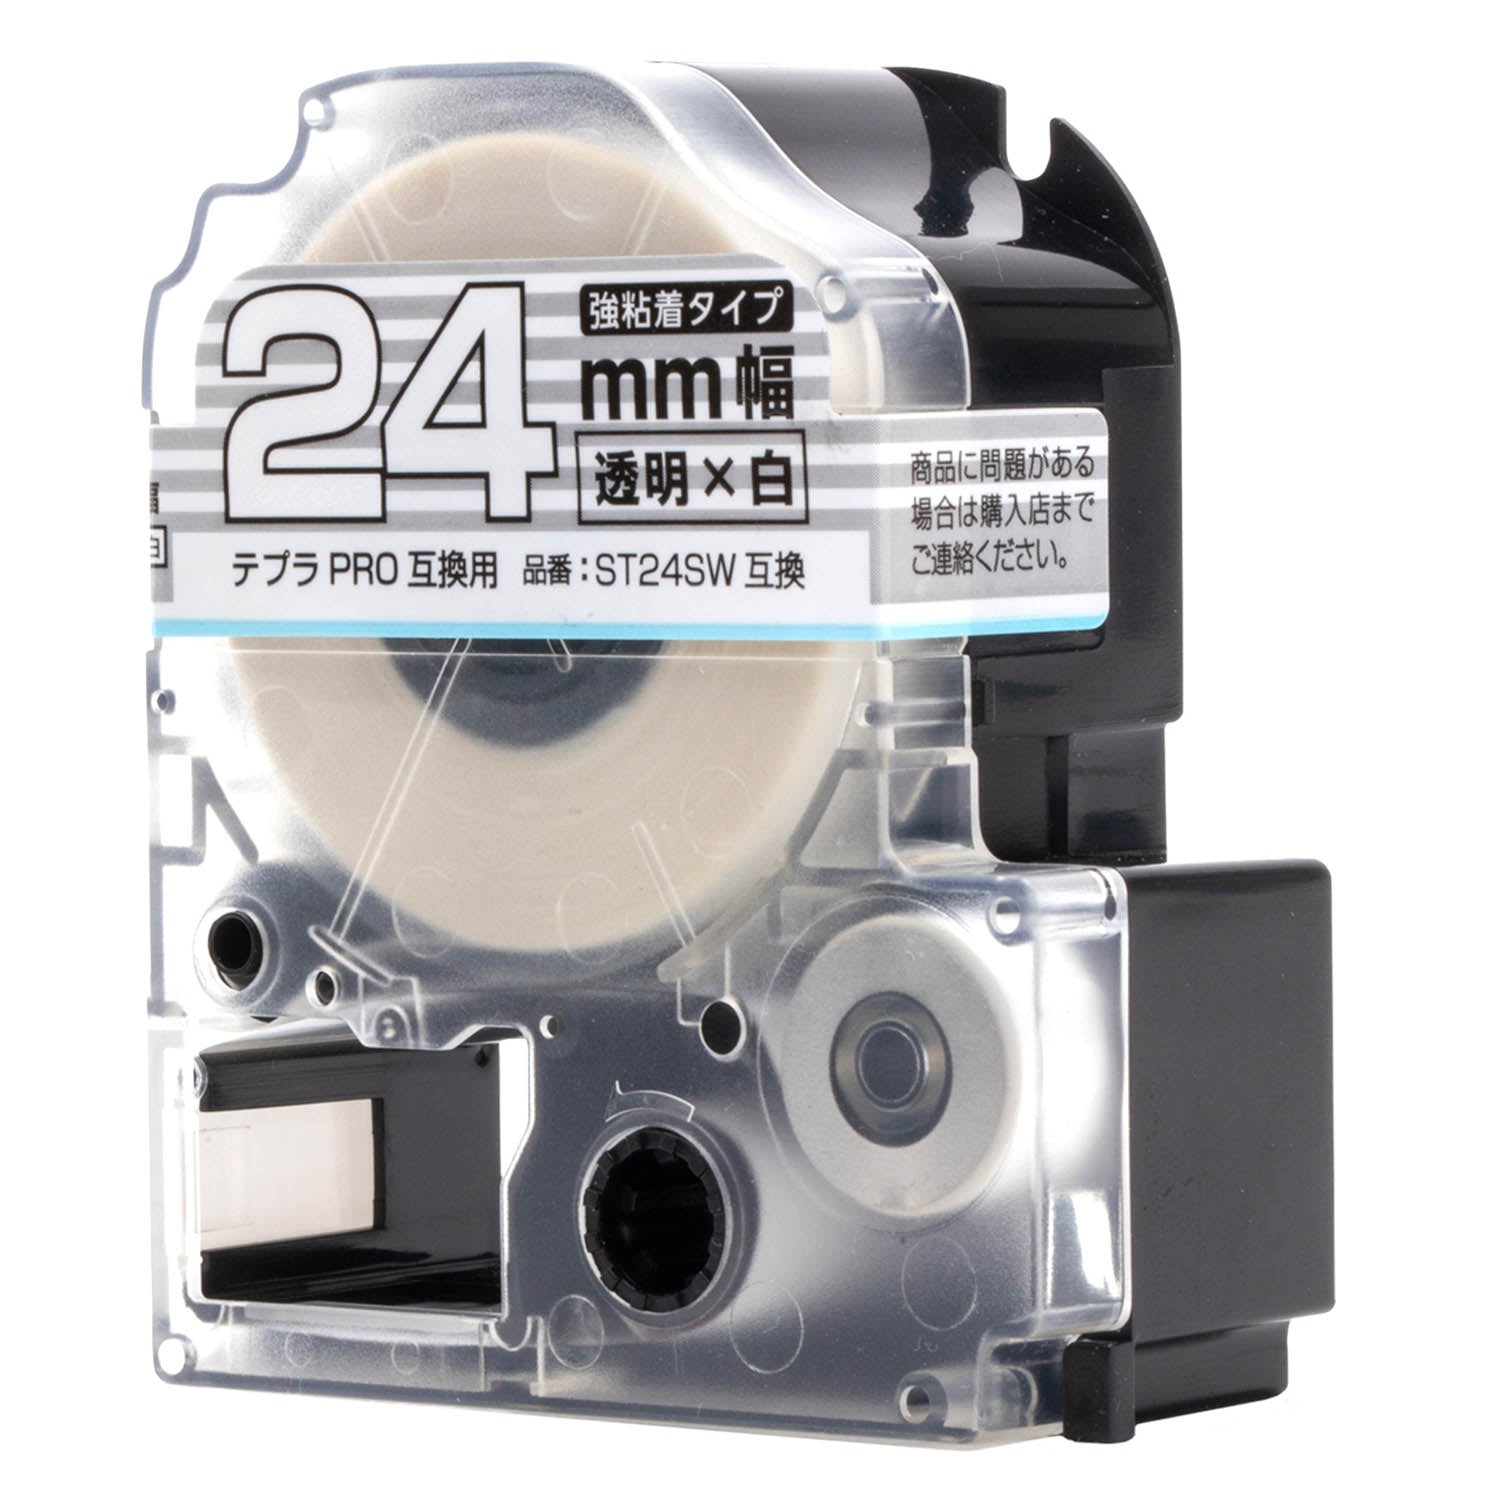 テプラPRO用互換テープカートリッジ 透明×白文字 24mm